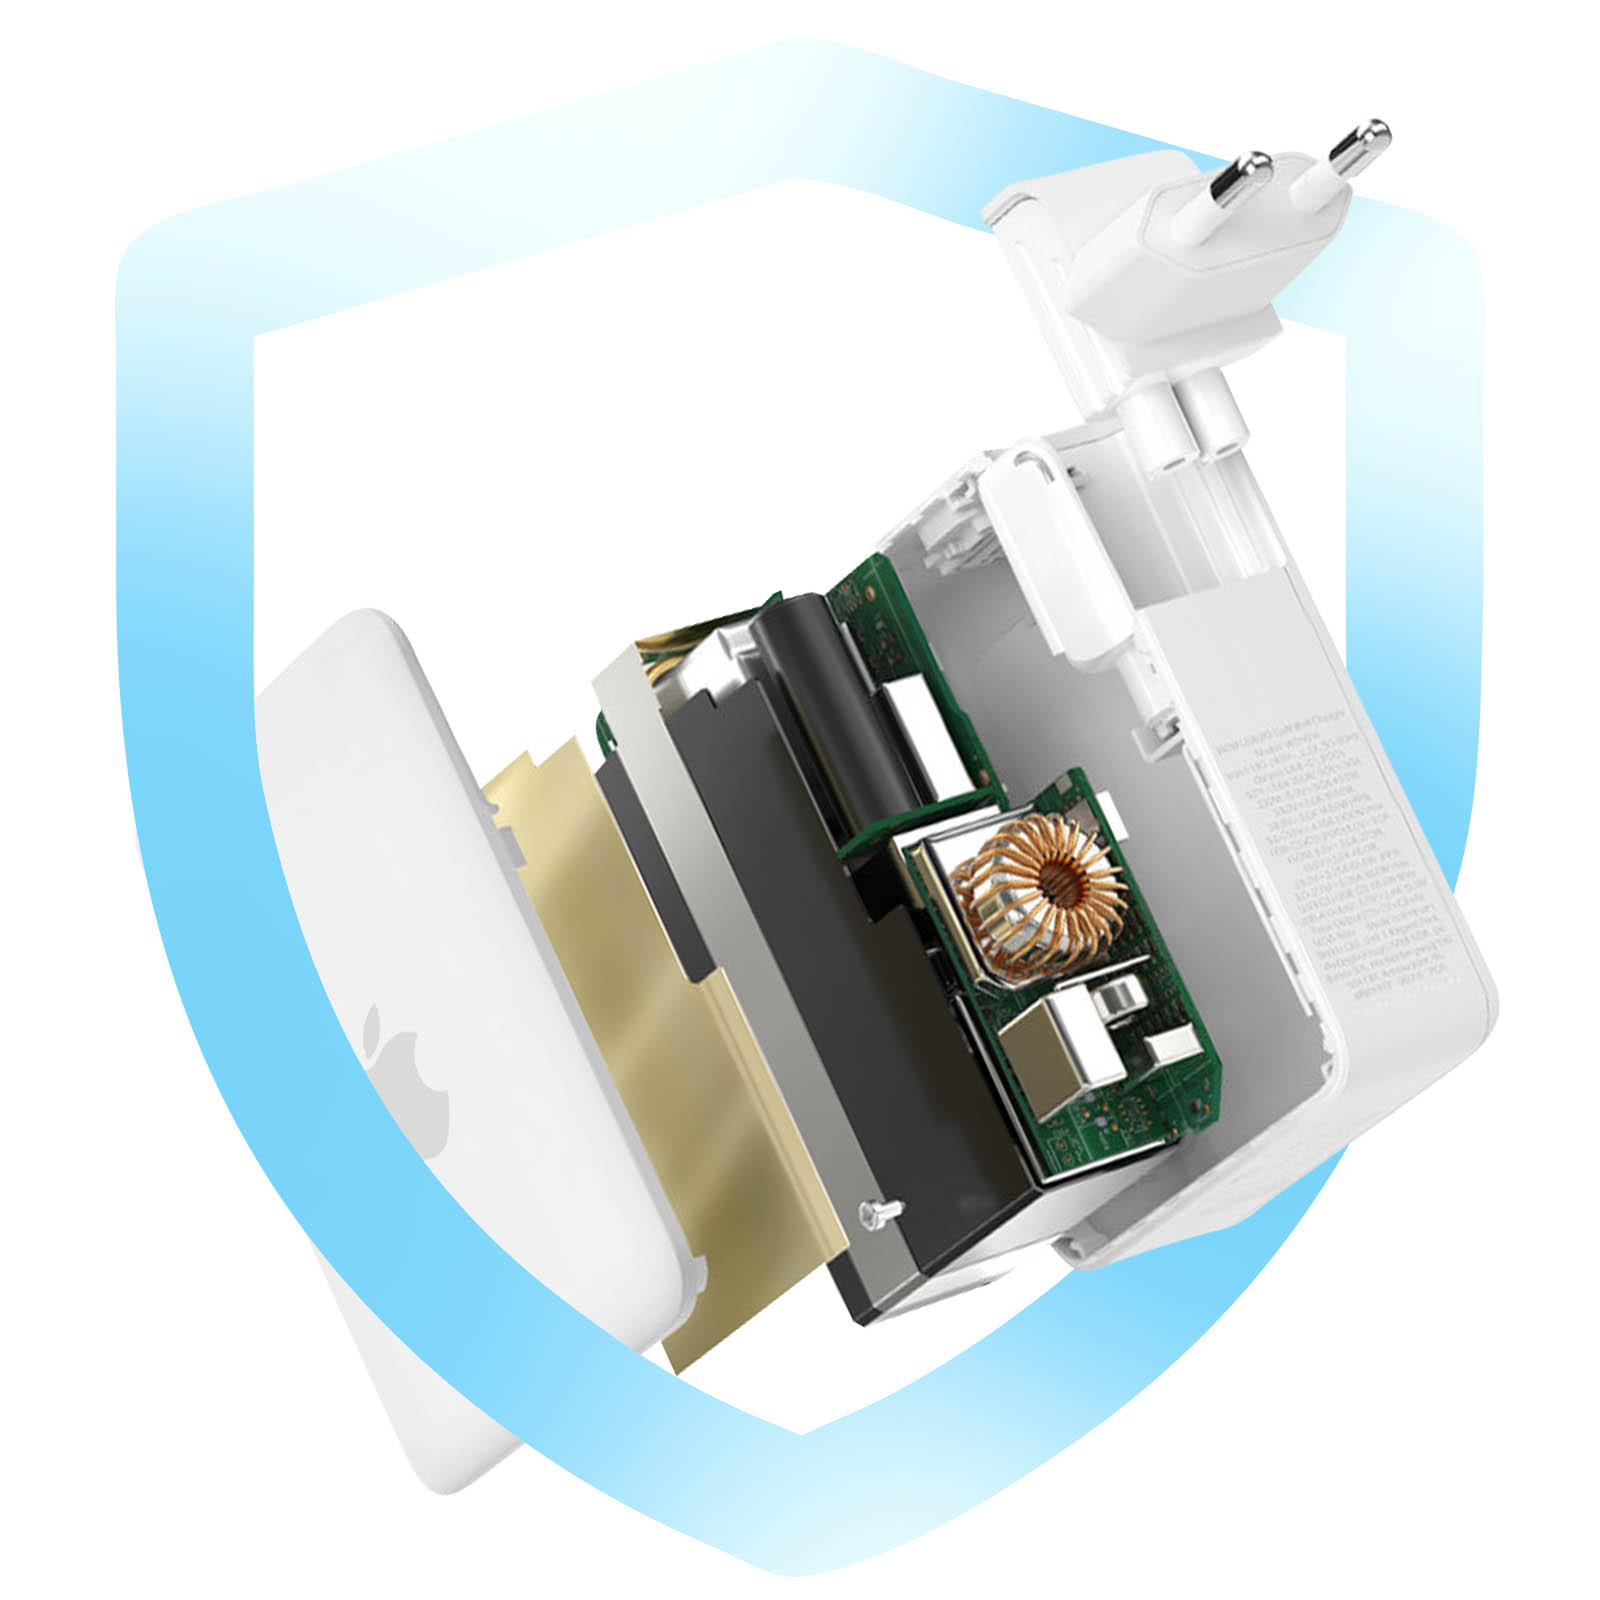 Chargeur Apple Secteur USB-C 140W Blanc (officiel) avec boîte pour